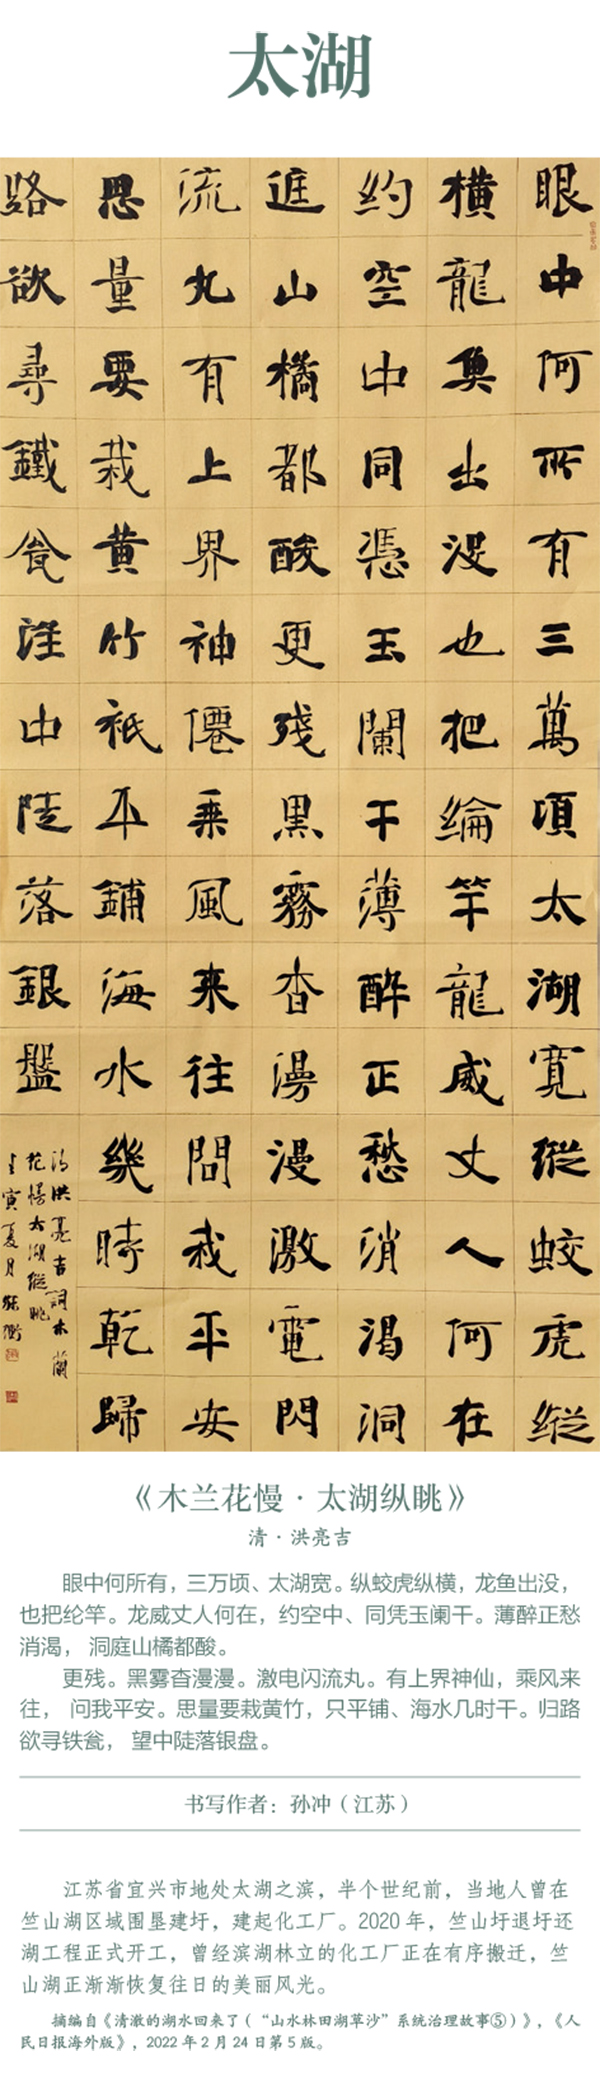 中國書協主題創作書法系列展——美麗中國插圖21題字網